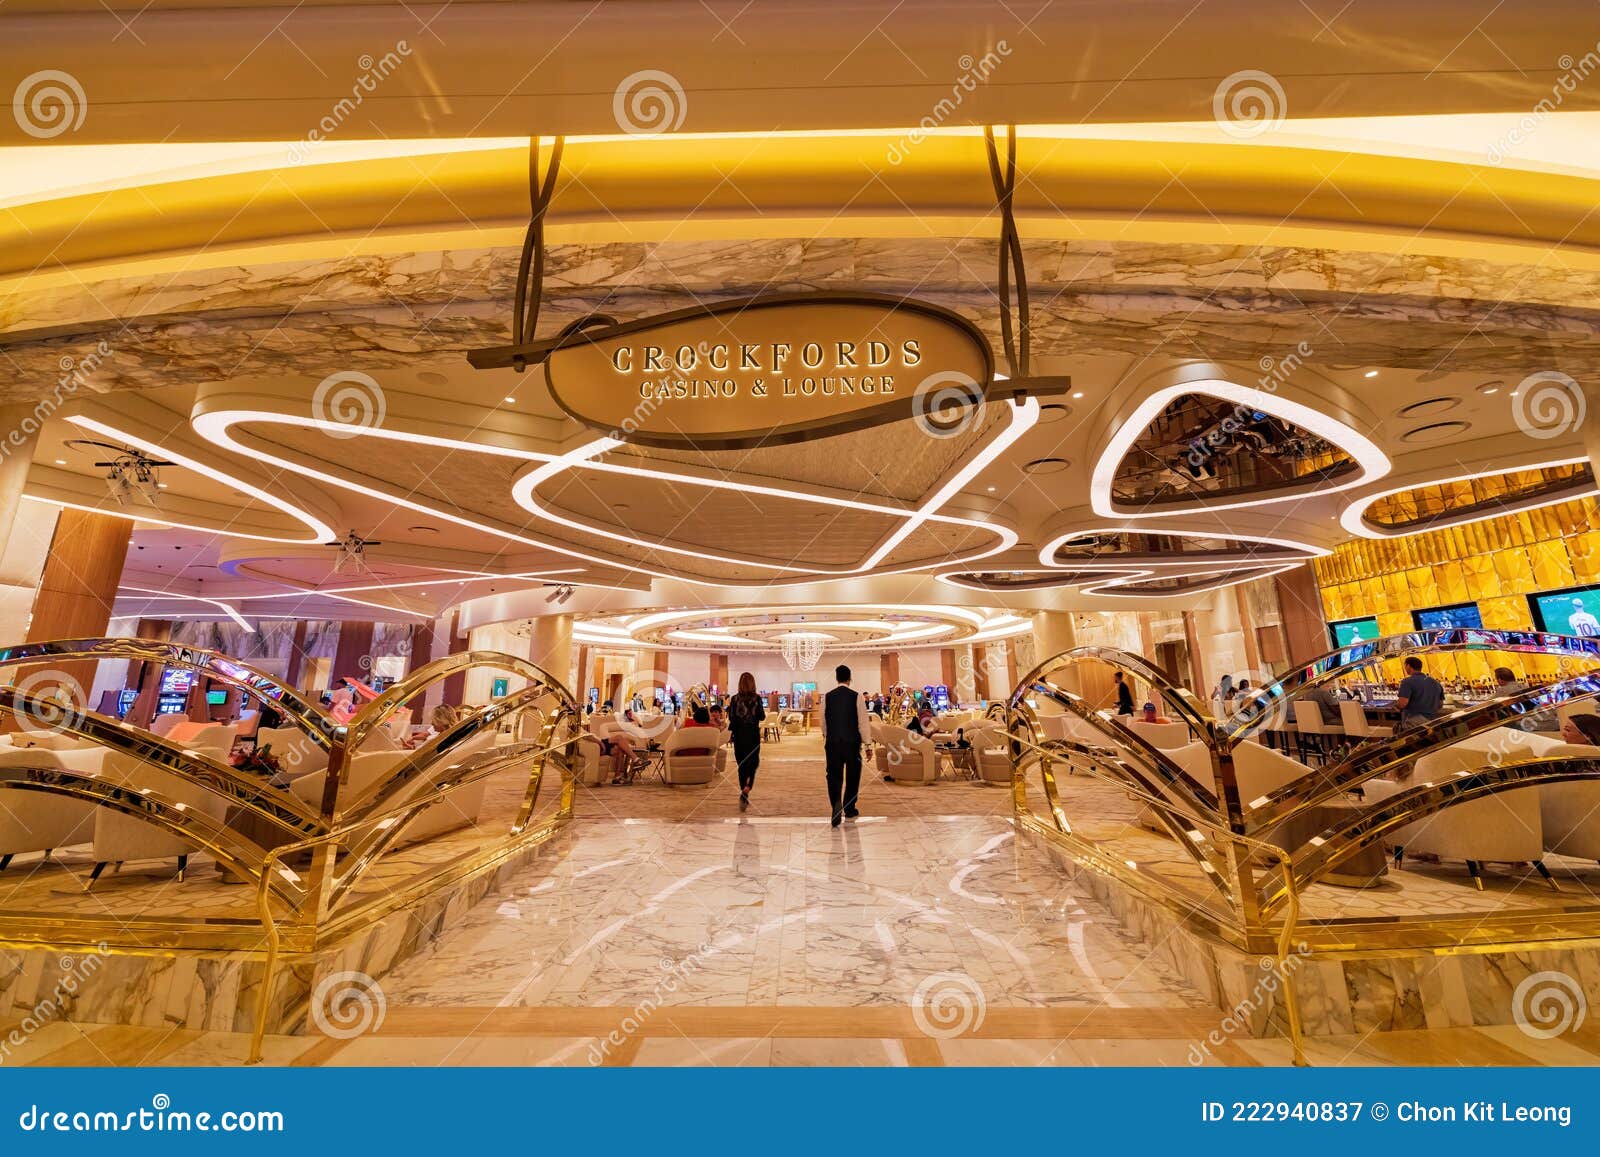 interior-view-resorts-world-casino-las-vegas-jun-222940837 Want More Money? Start casino